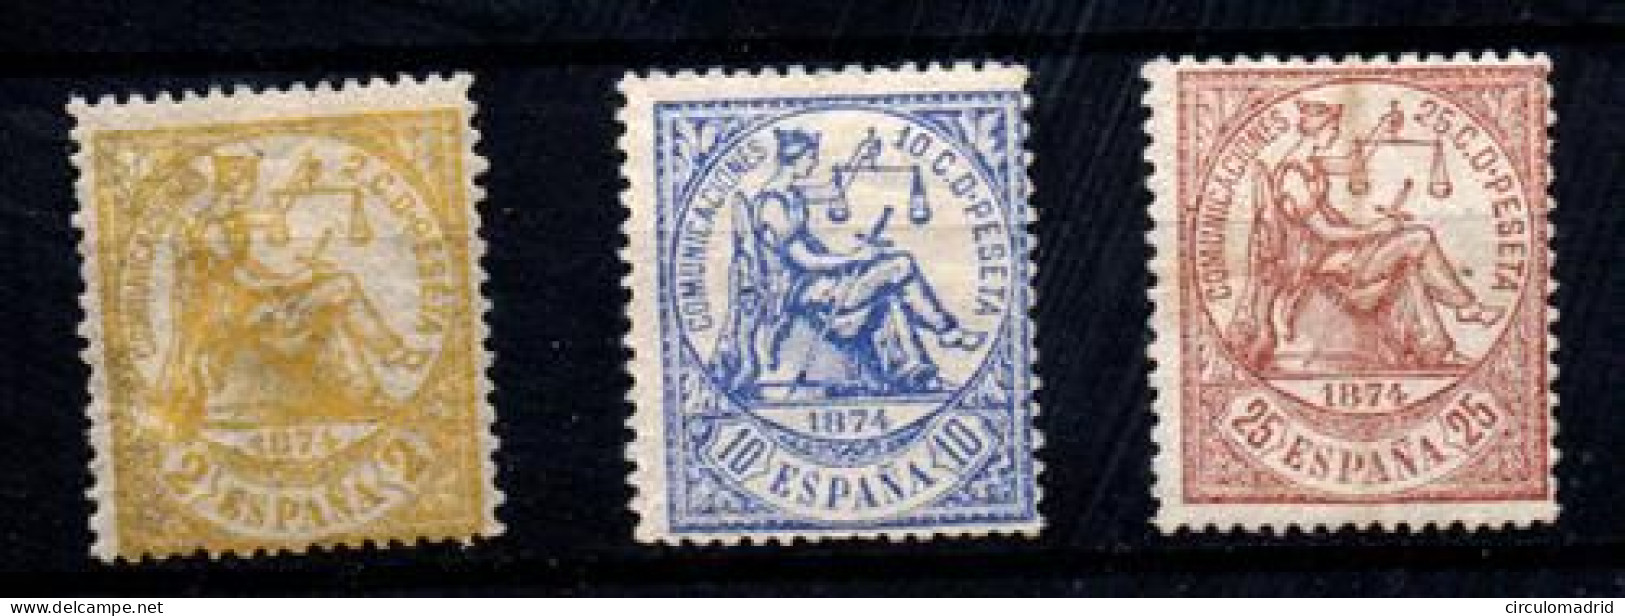 España Nº 143, 145, 147. Año 1874 - Unused Stamps